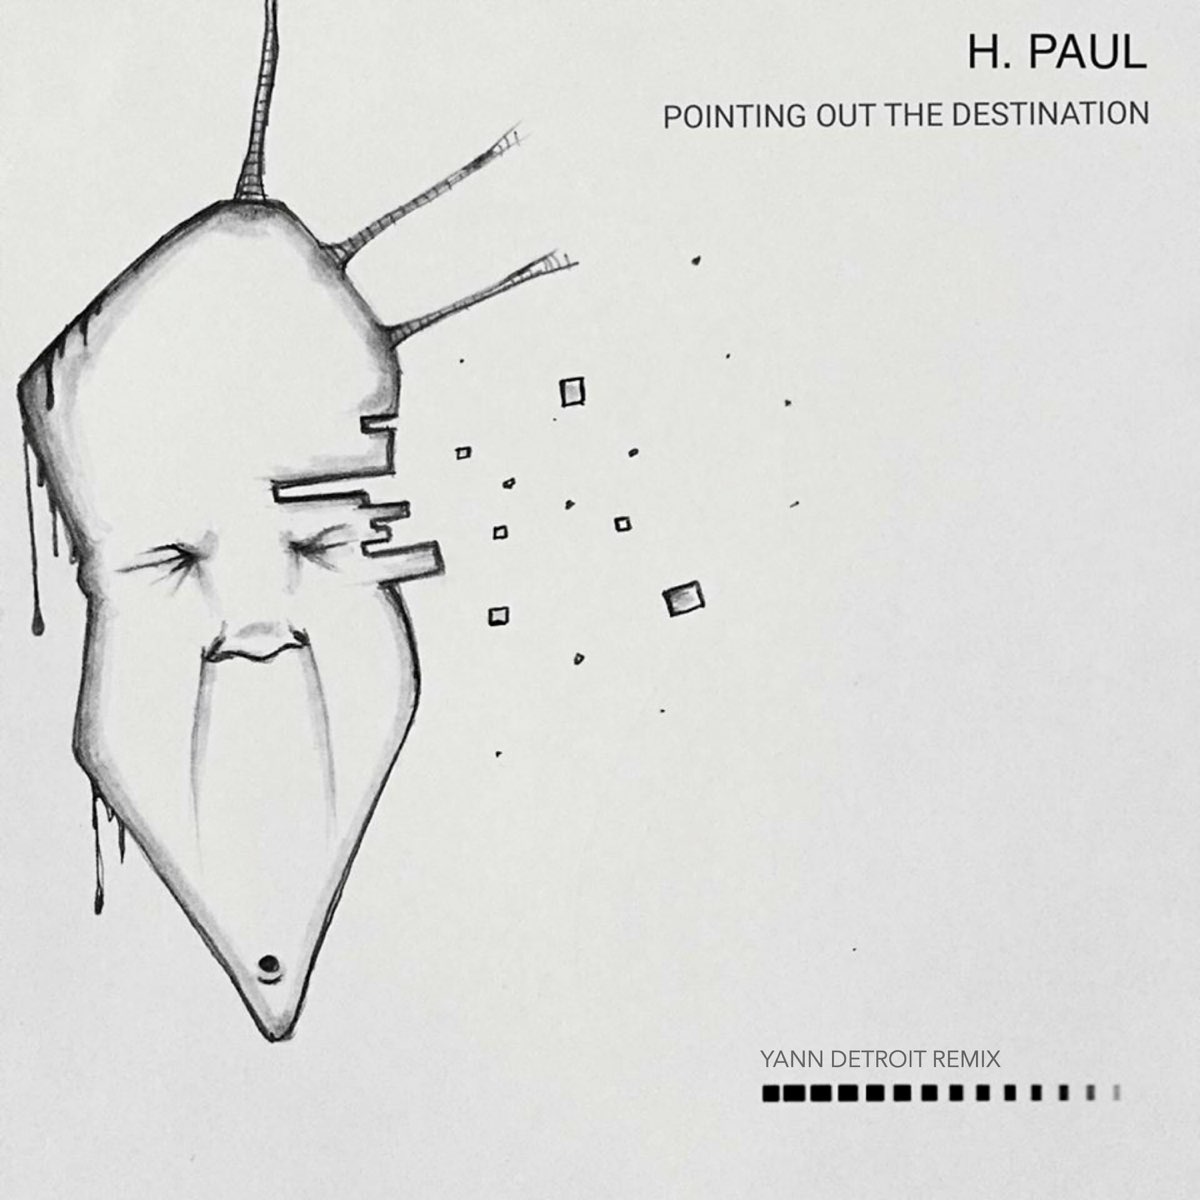 H paul. Hi Paul listen Paul we ve got a problem.